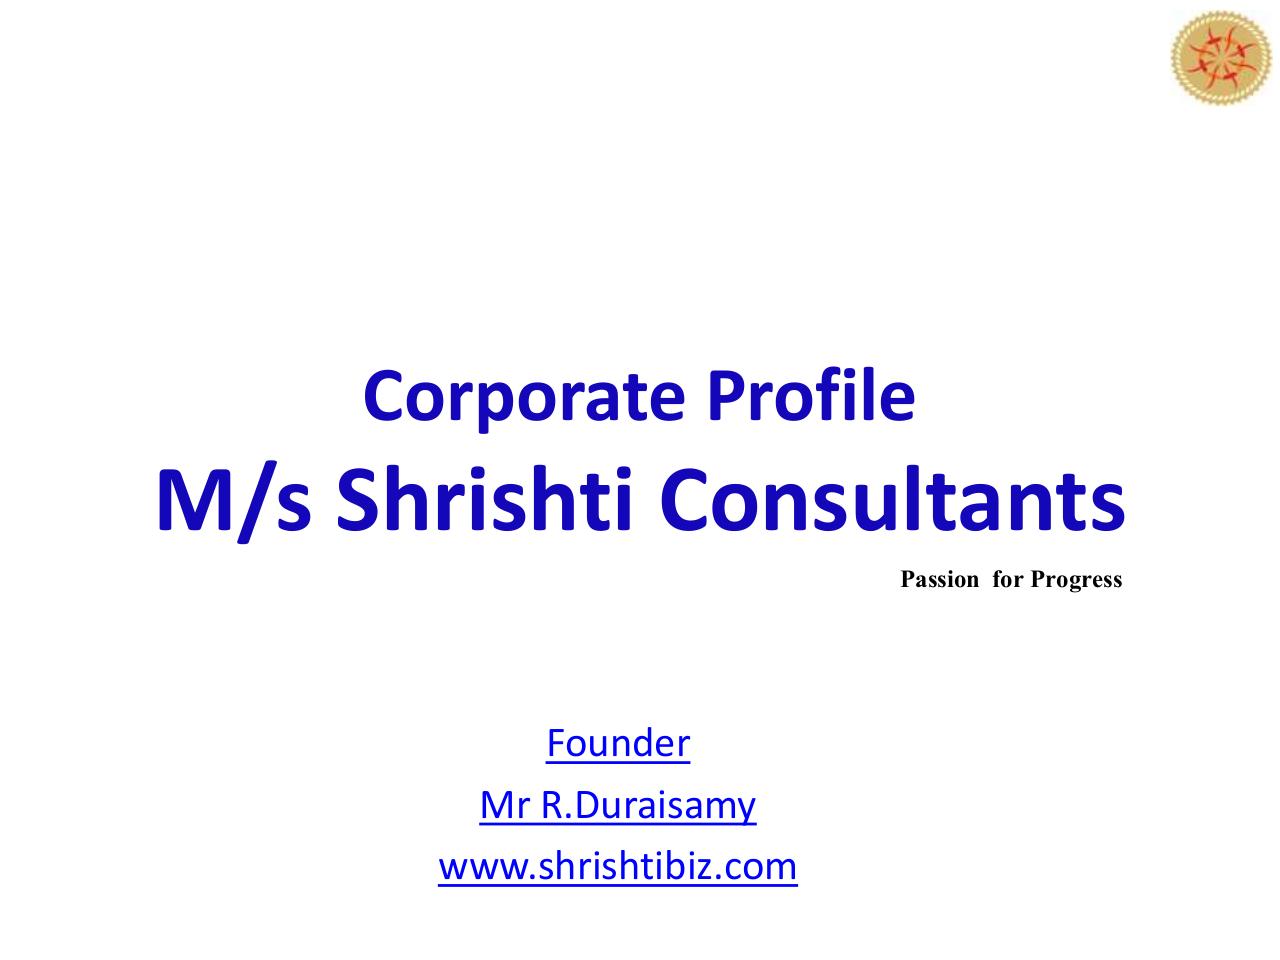 Corporate Profile - Shrishti Consultants 20.pdf - page 1/37